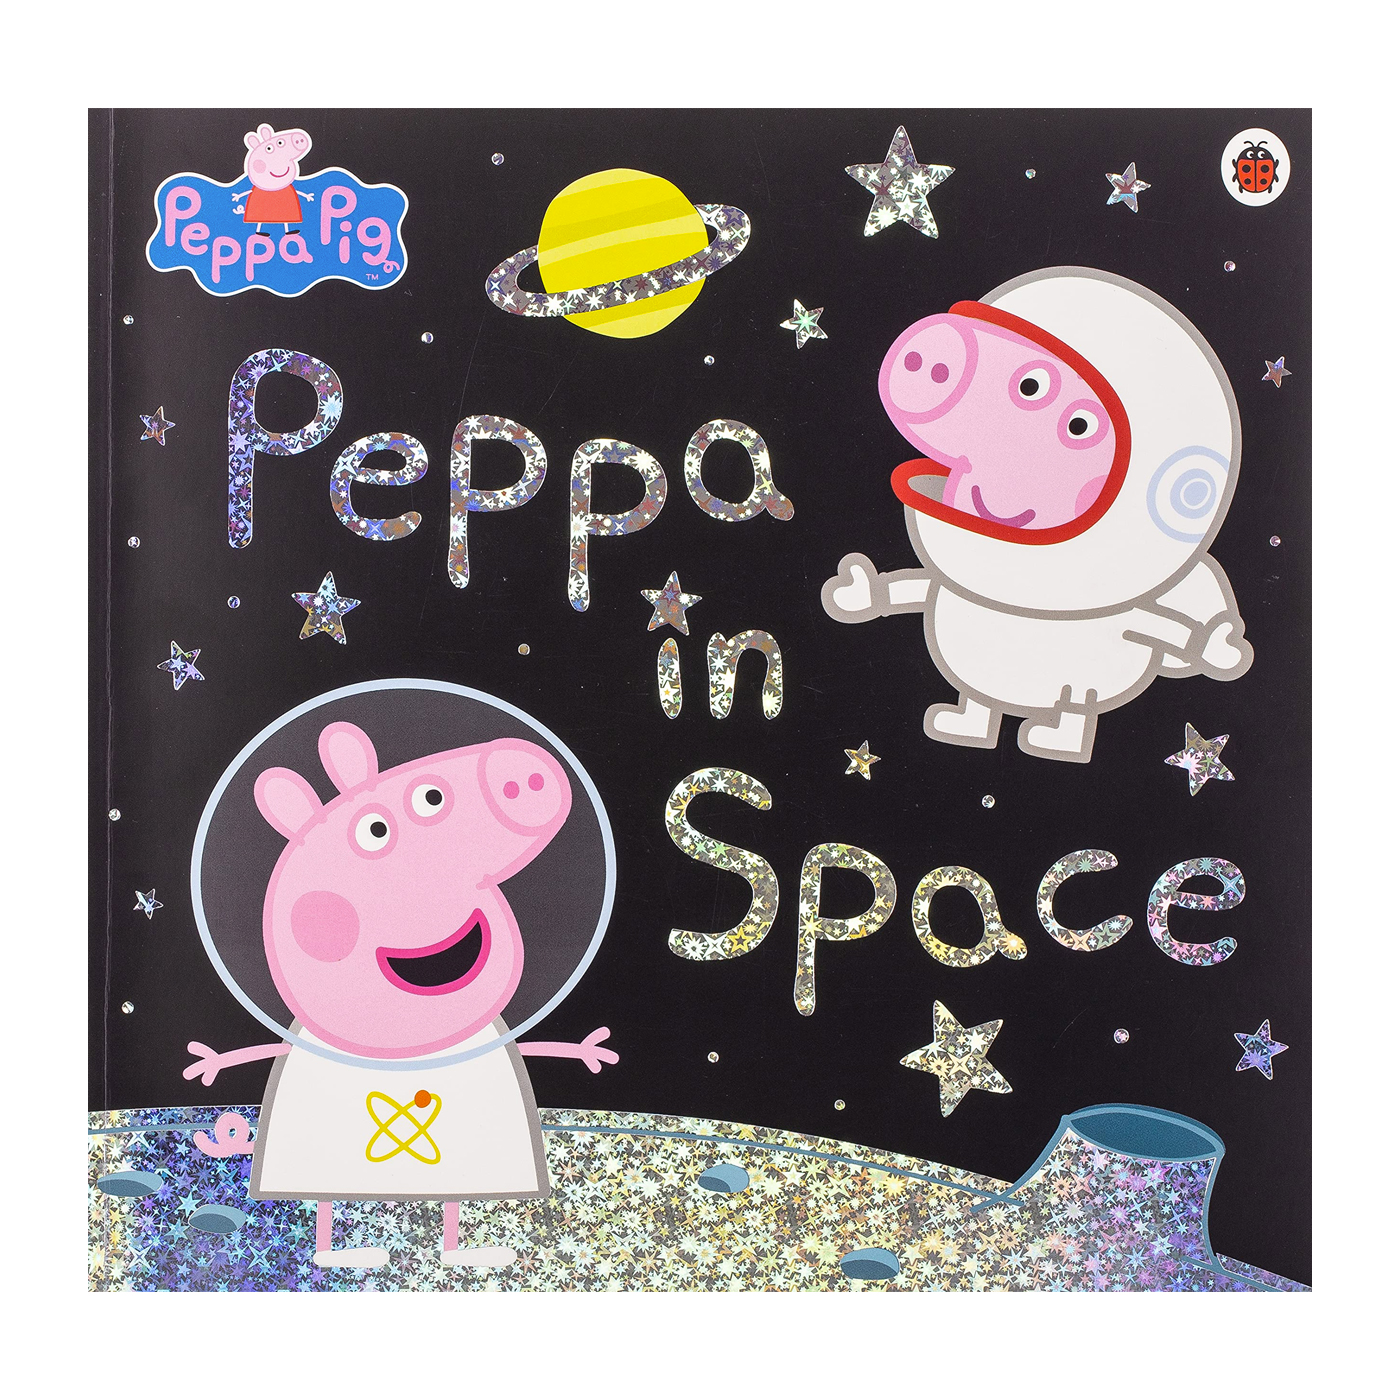 LADYBIRD Peppa Pig: Peppa In Space